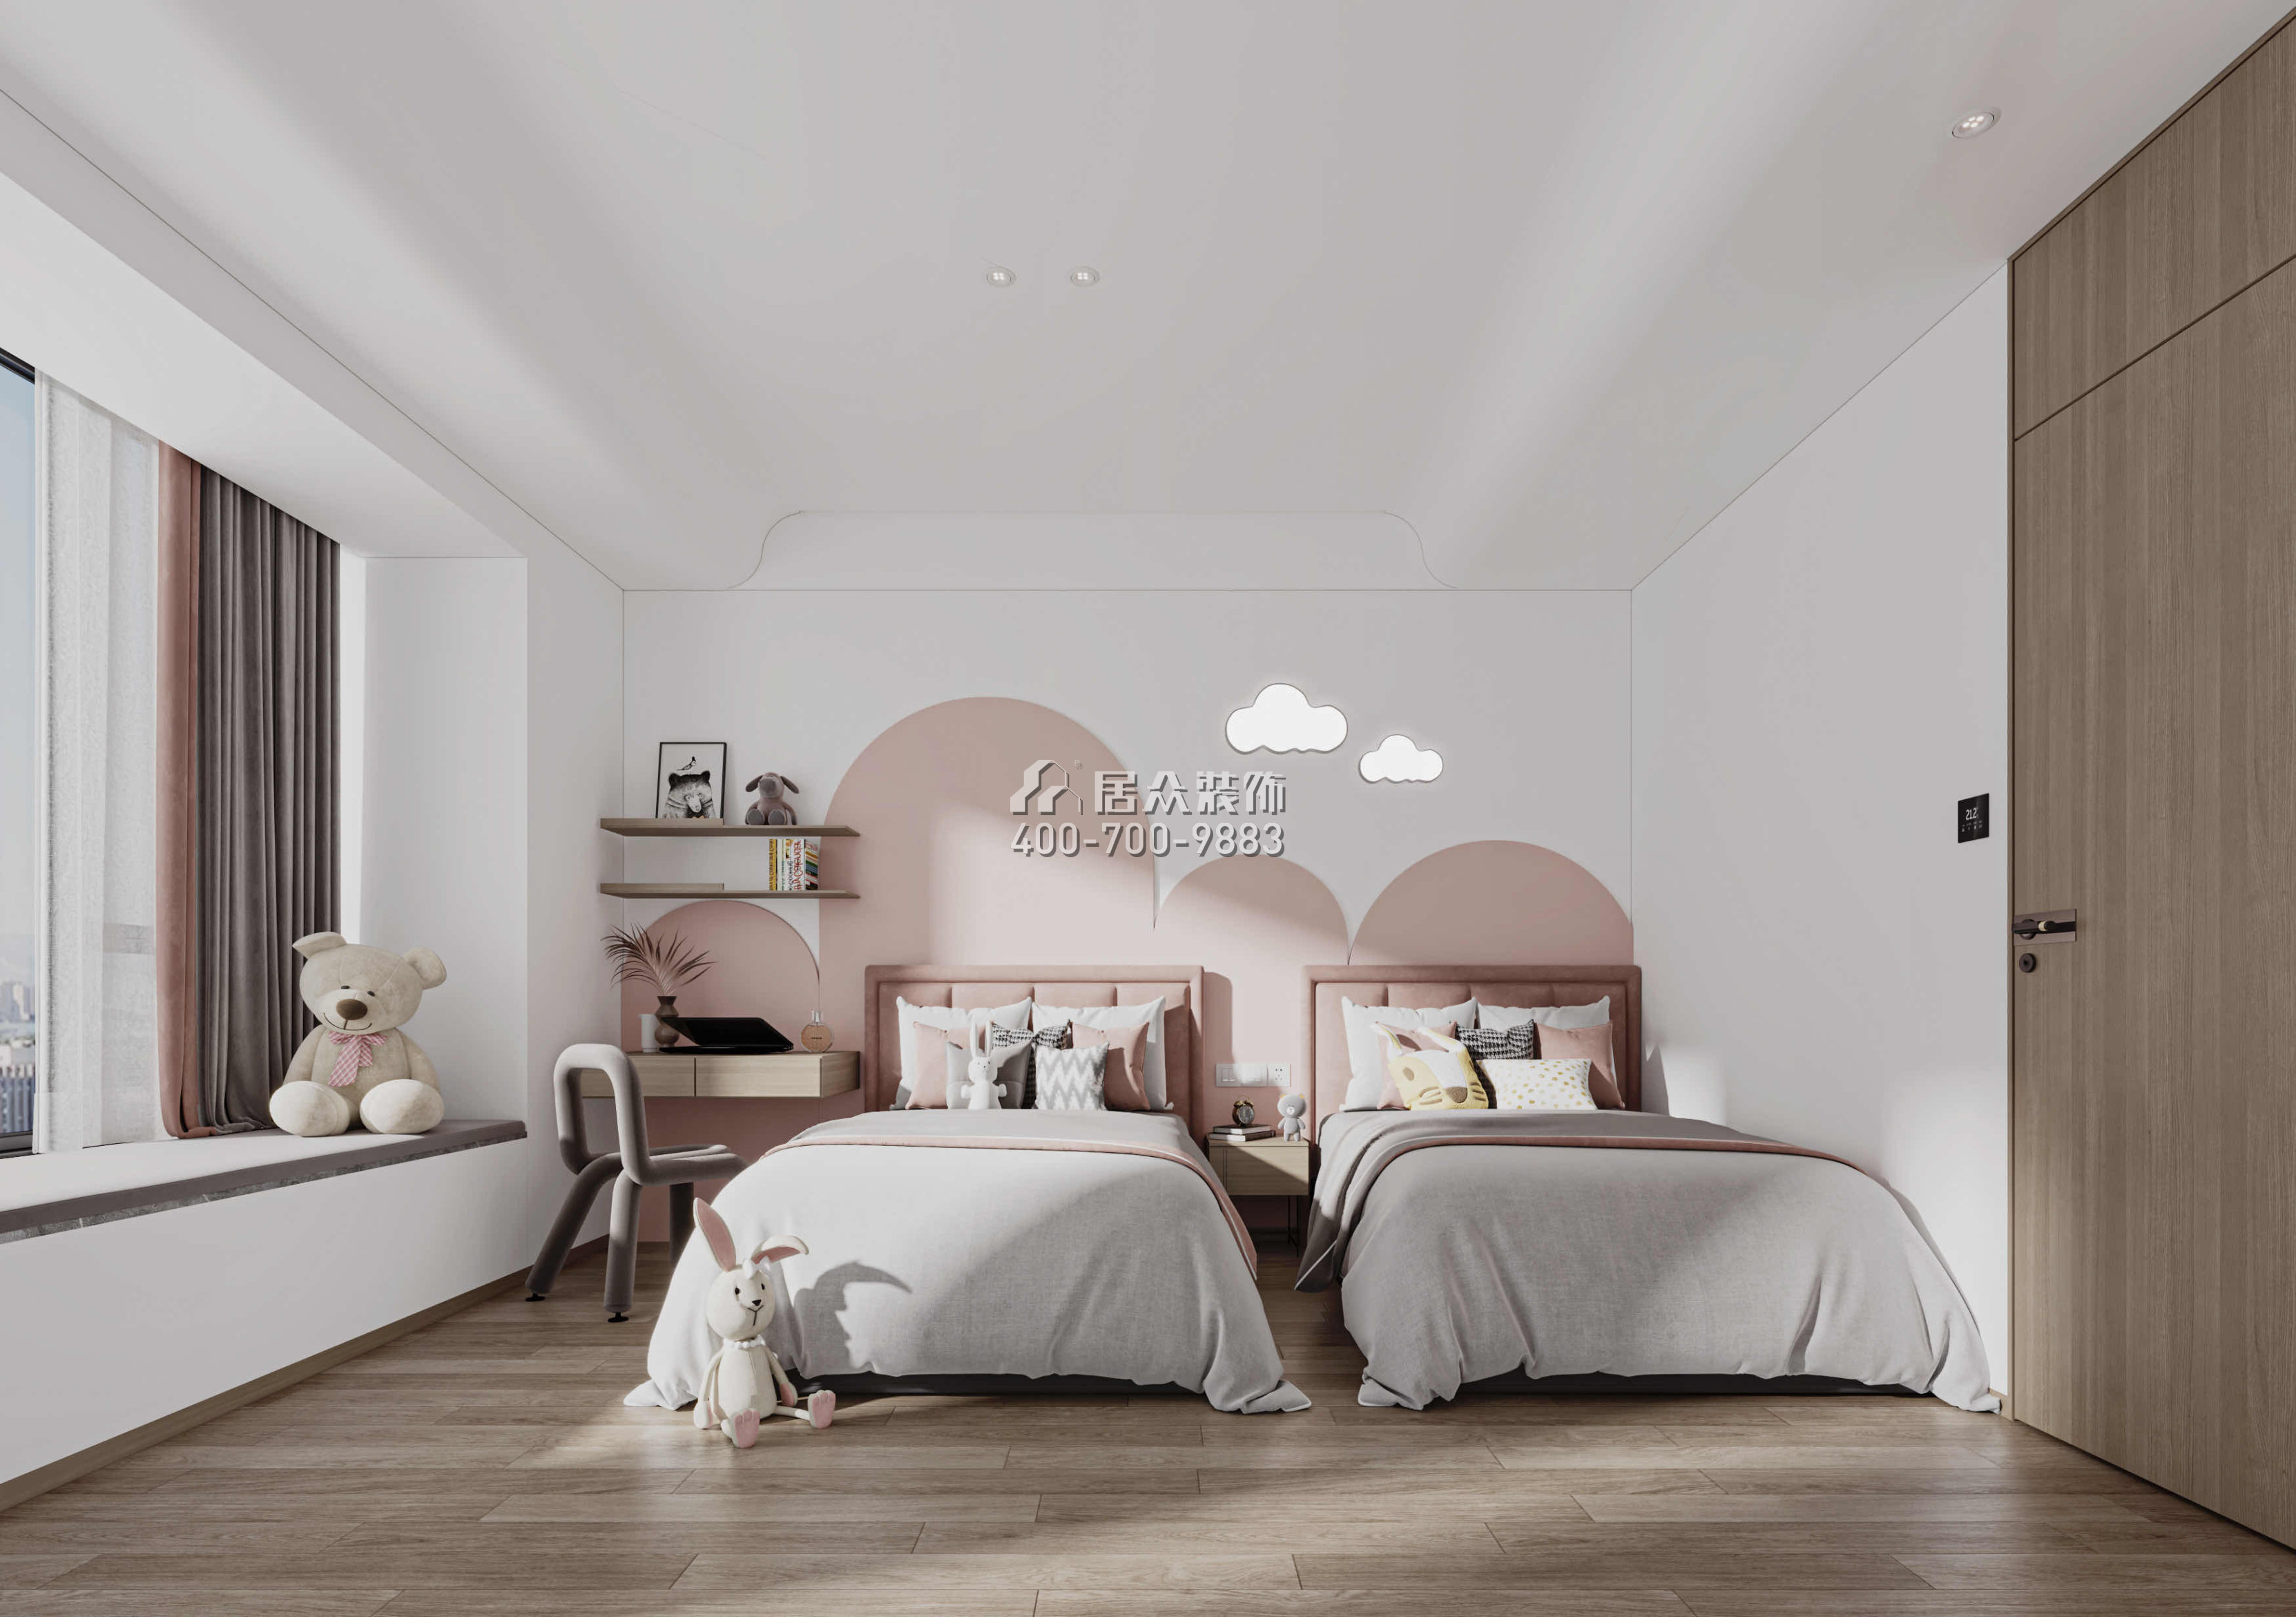 華發綠洋灣191平方米現代簡約風格平層戶型臥室裝修效果圖